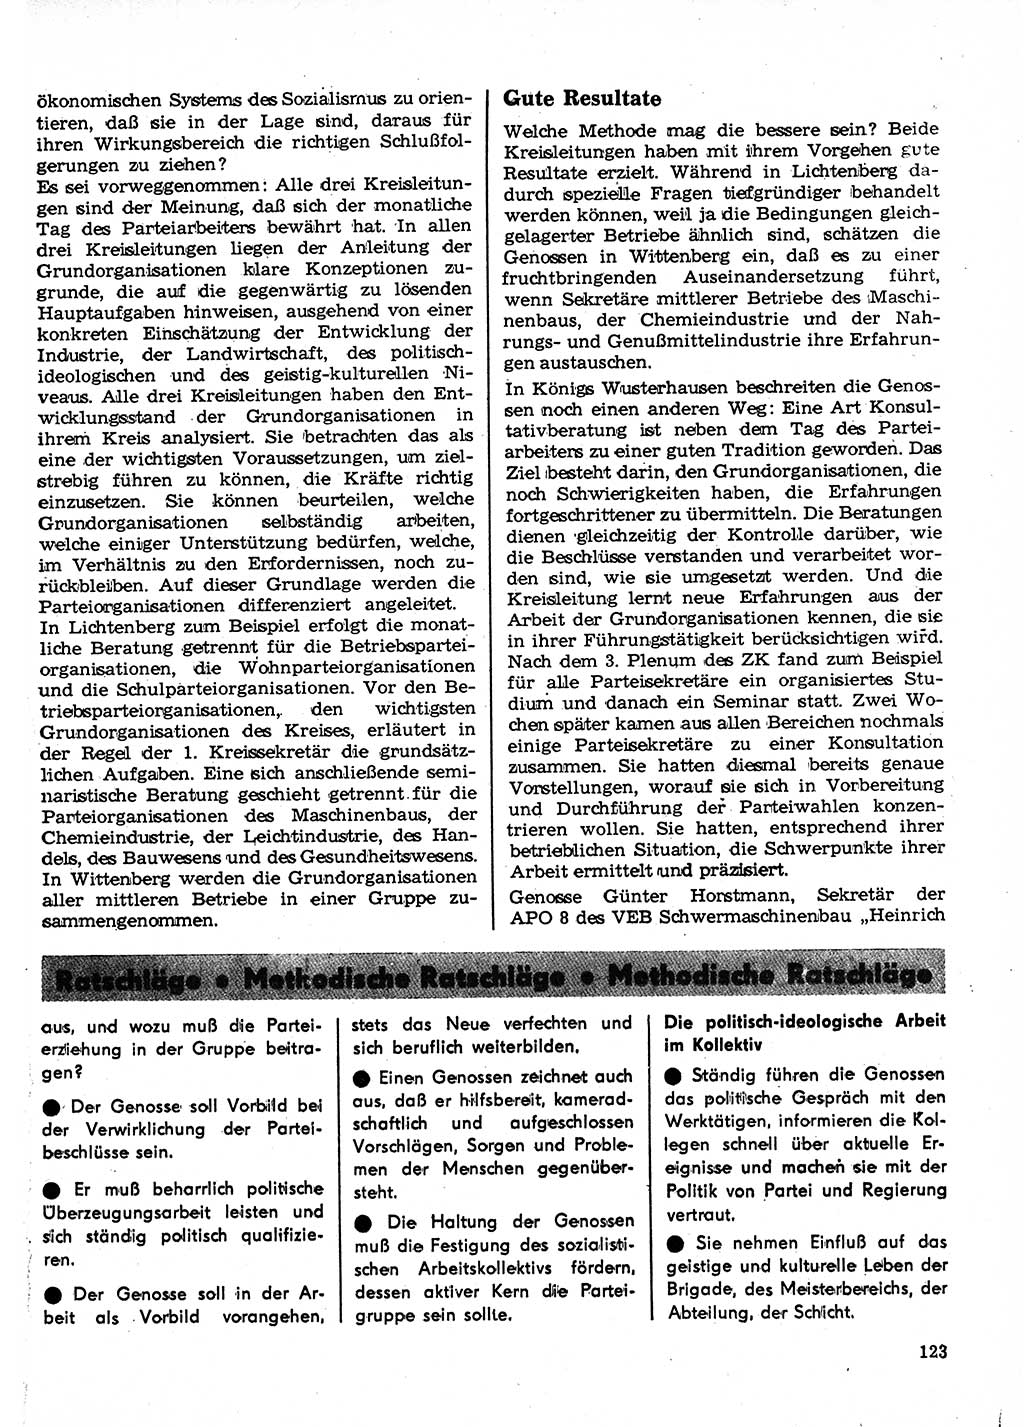 Neuer Weg (NW), Organ des Zentralkomitees (ZK) der SED (Sozialistische Einheitspartei Deutschlands) für Fragen des Parteilebens, 23. Jahrgang [Deutsche Demokratische Republik (DDR)] 1968, Seite 123 (NW ZK SED DDR 1968, S. 123)